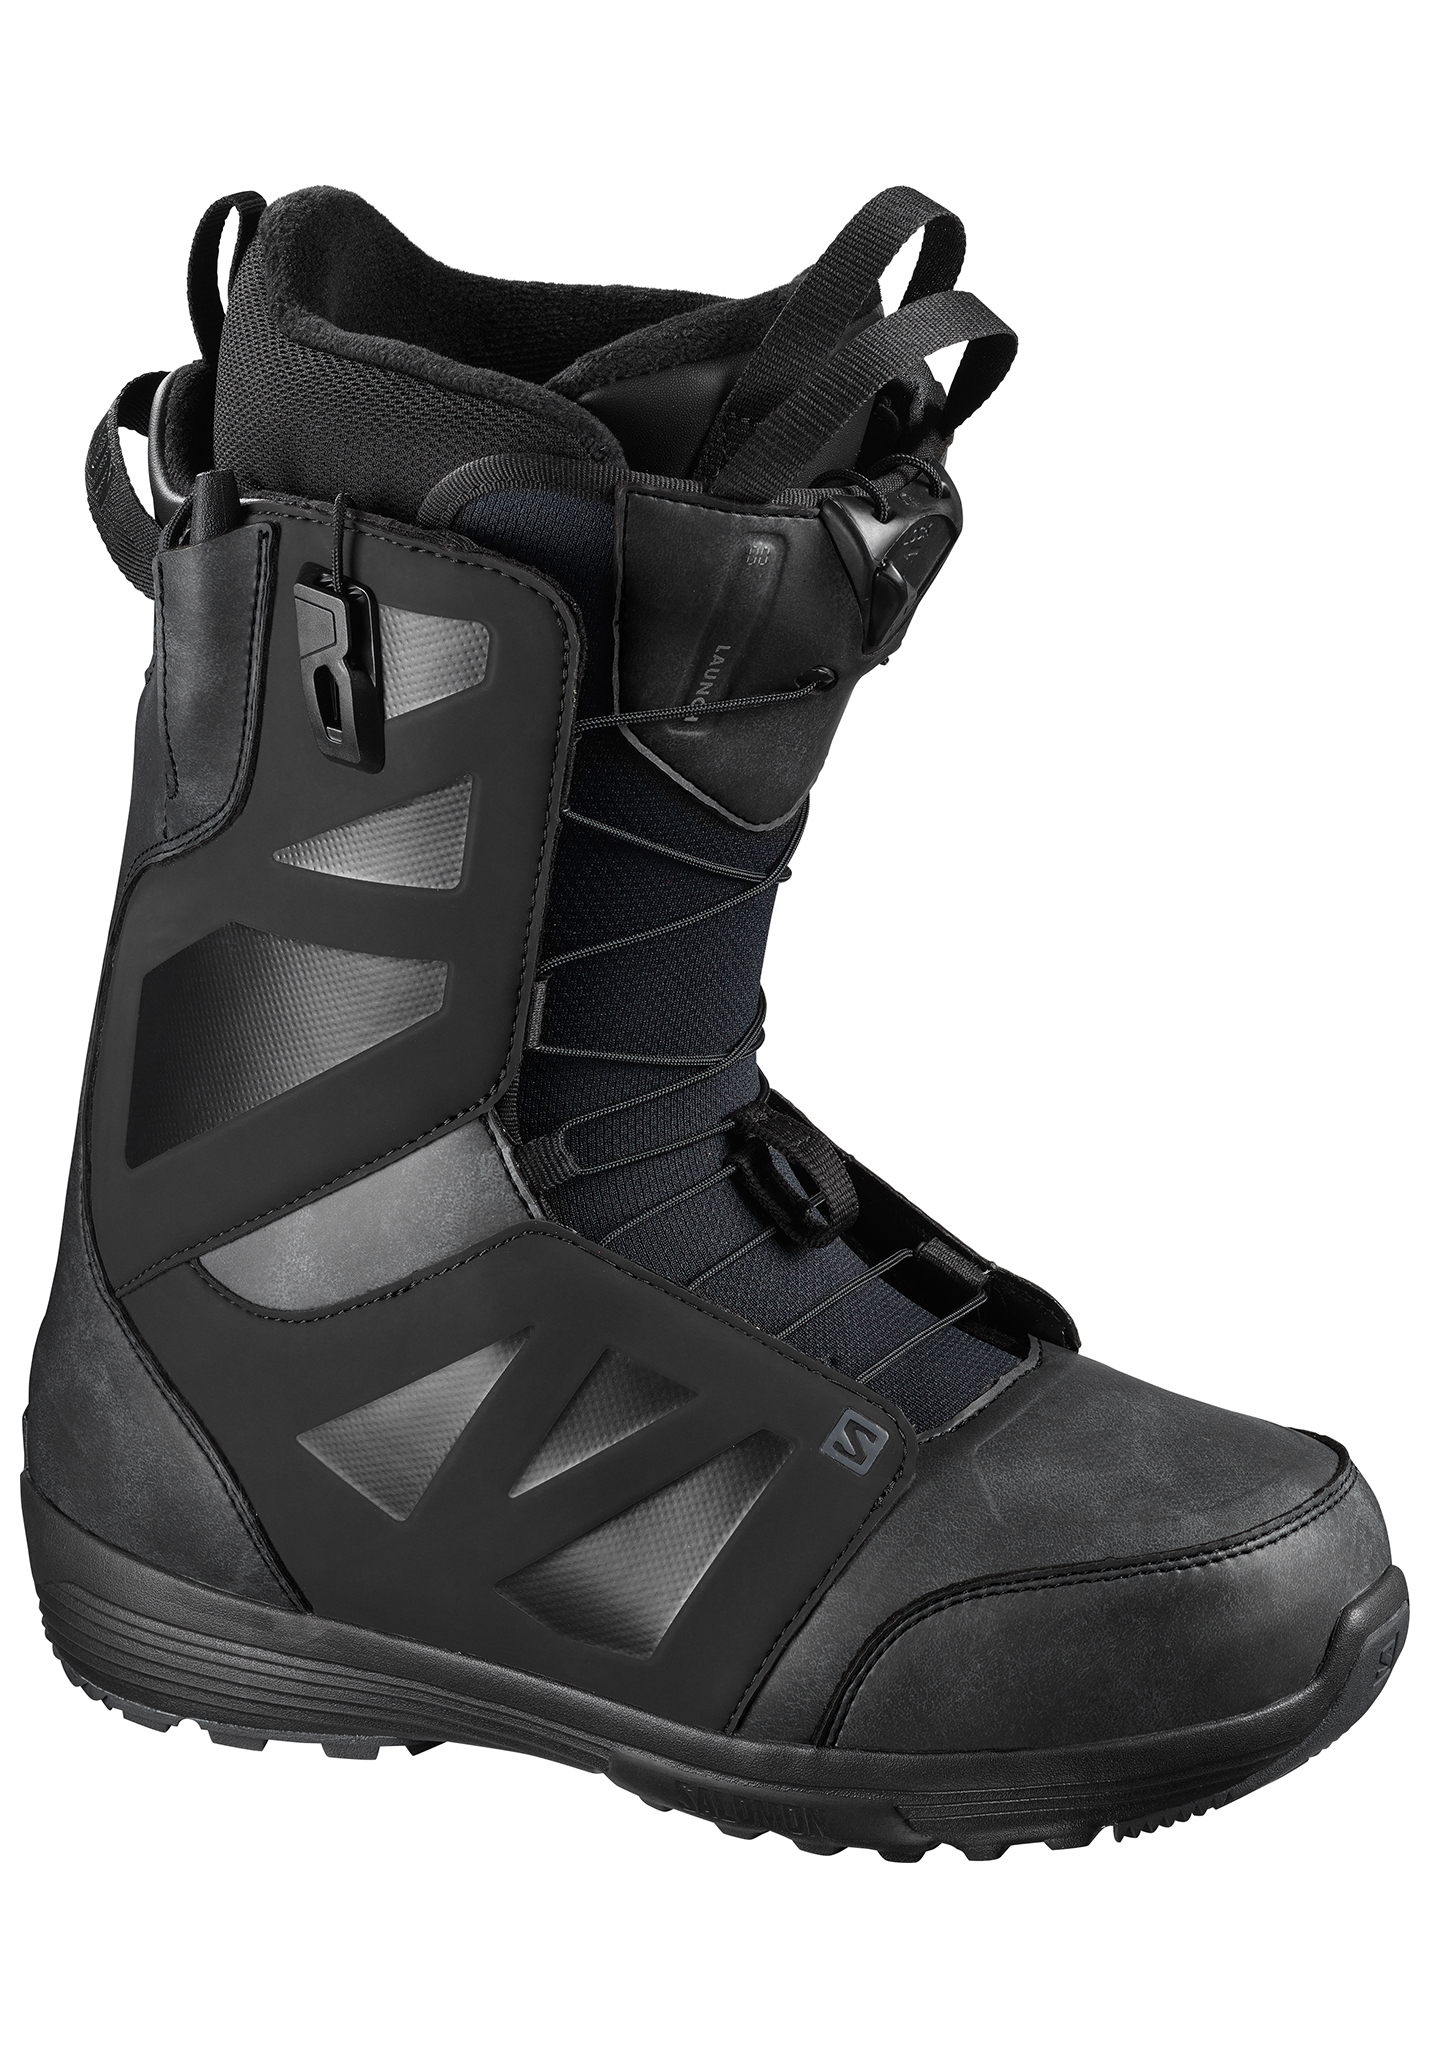 Salomon Launch Snowboard Boots schwarz/schwarz/asphalt 44,5